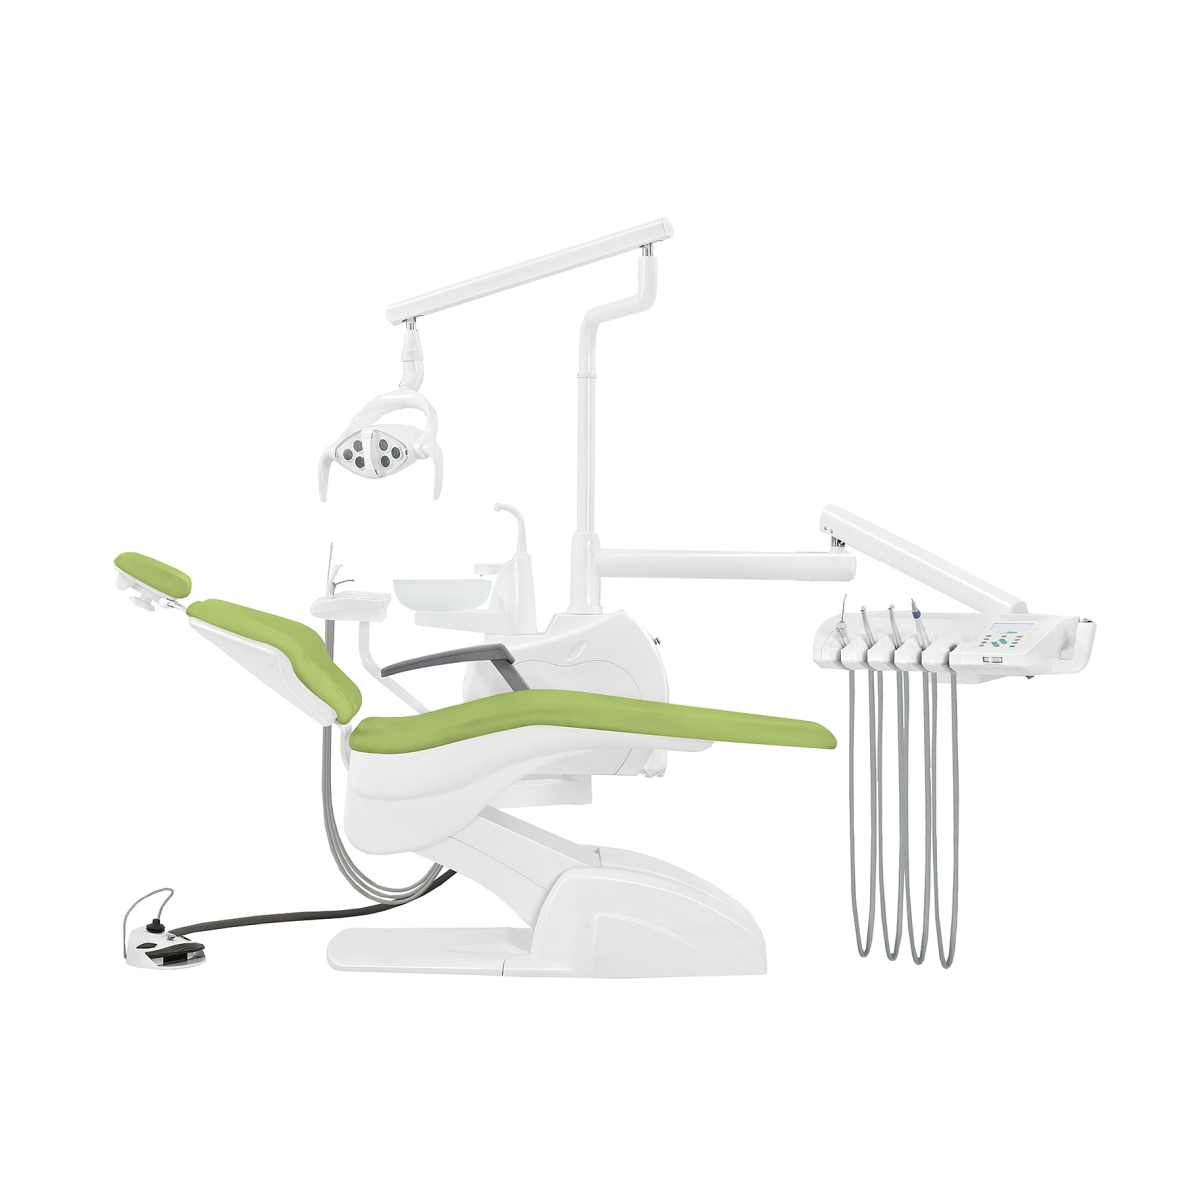 Установка стоматологическая QL2028 (Pragmatic) с нижней подачей со скайлером с мягкой обивкой цвет МО7 зелёный КОМПЛЕКТ 2 СТУЛА - Fengdan